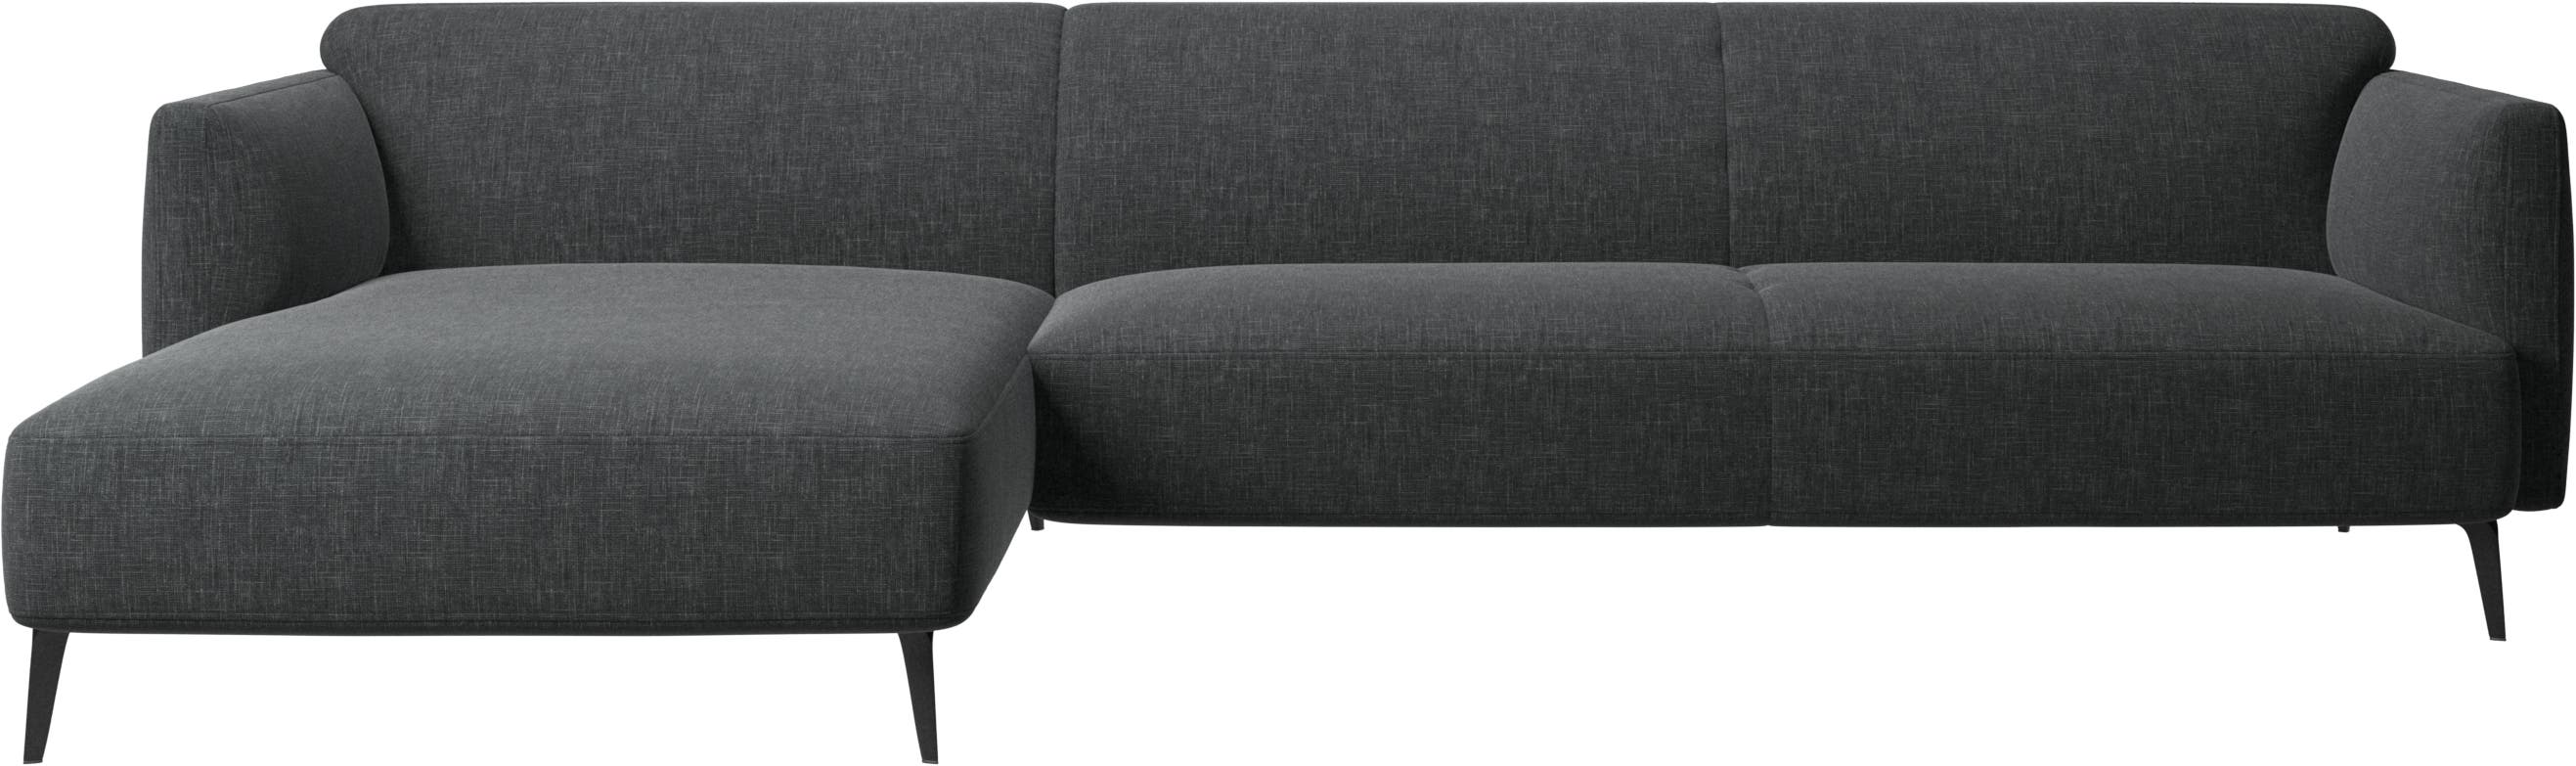 Modena-sohva, divaanilla